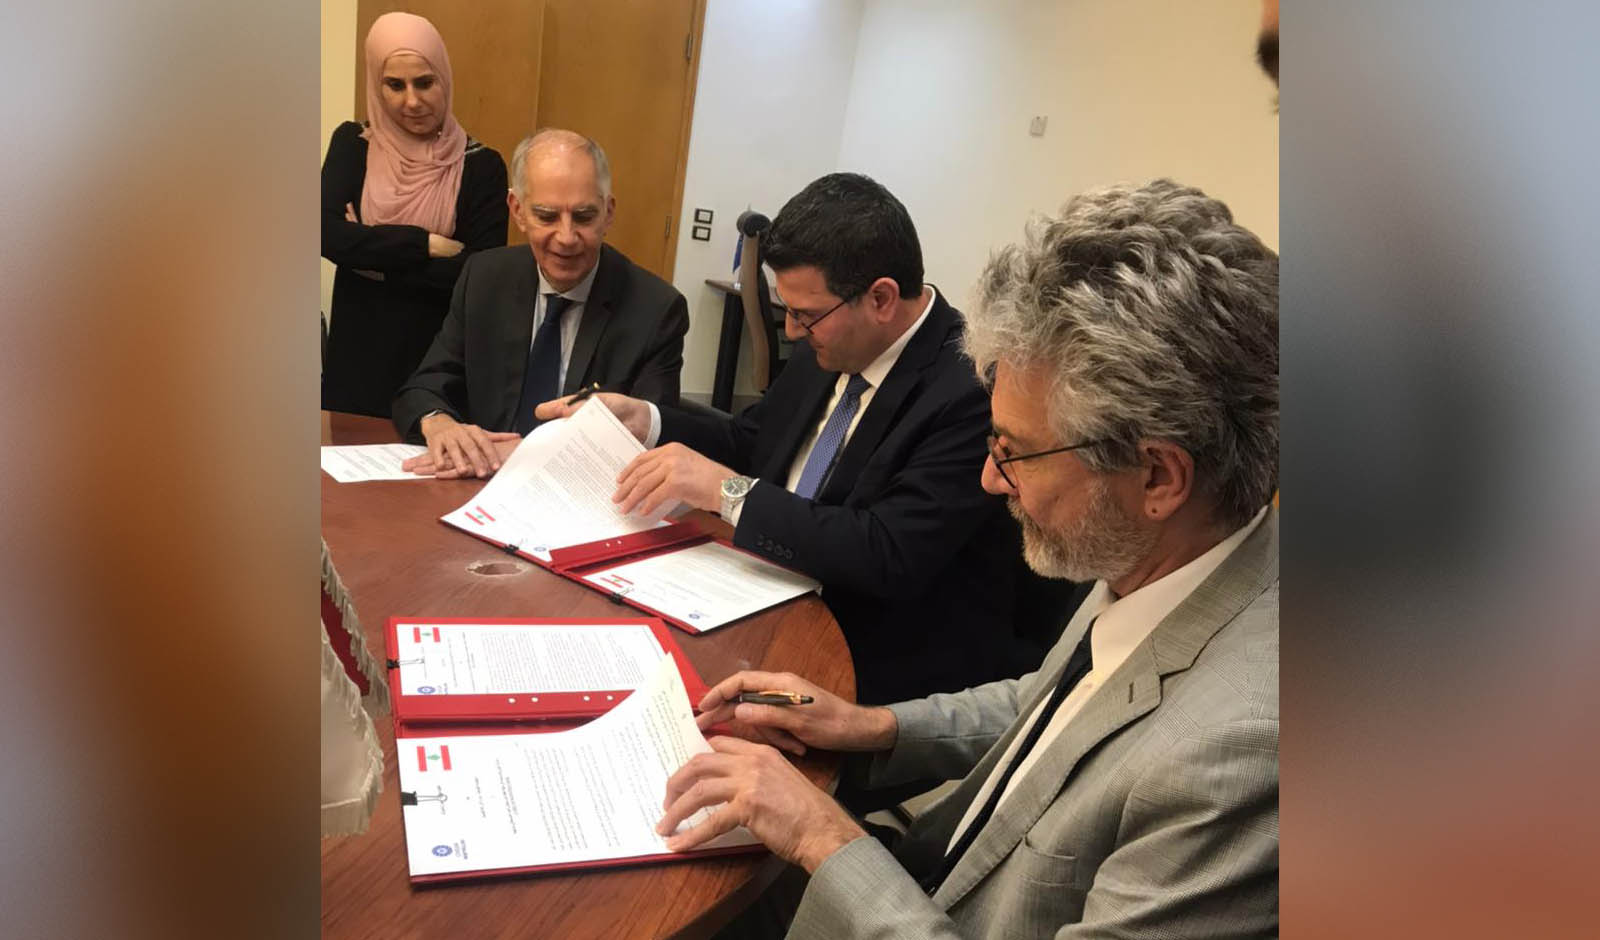 اتفاقية التعاون بين الحكومة اللبنانية ممثلة بوزير الزراعة والمركز الدولي للدراسات الزراعية العليا لدول حوض البحر المتوسط في مونبلييه